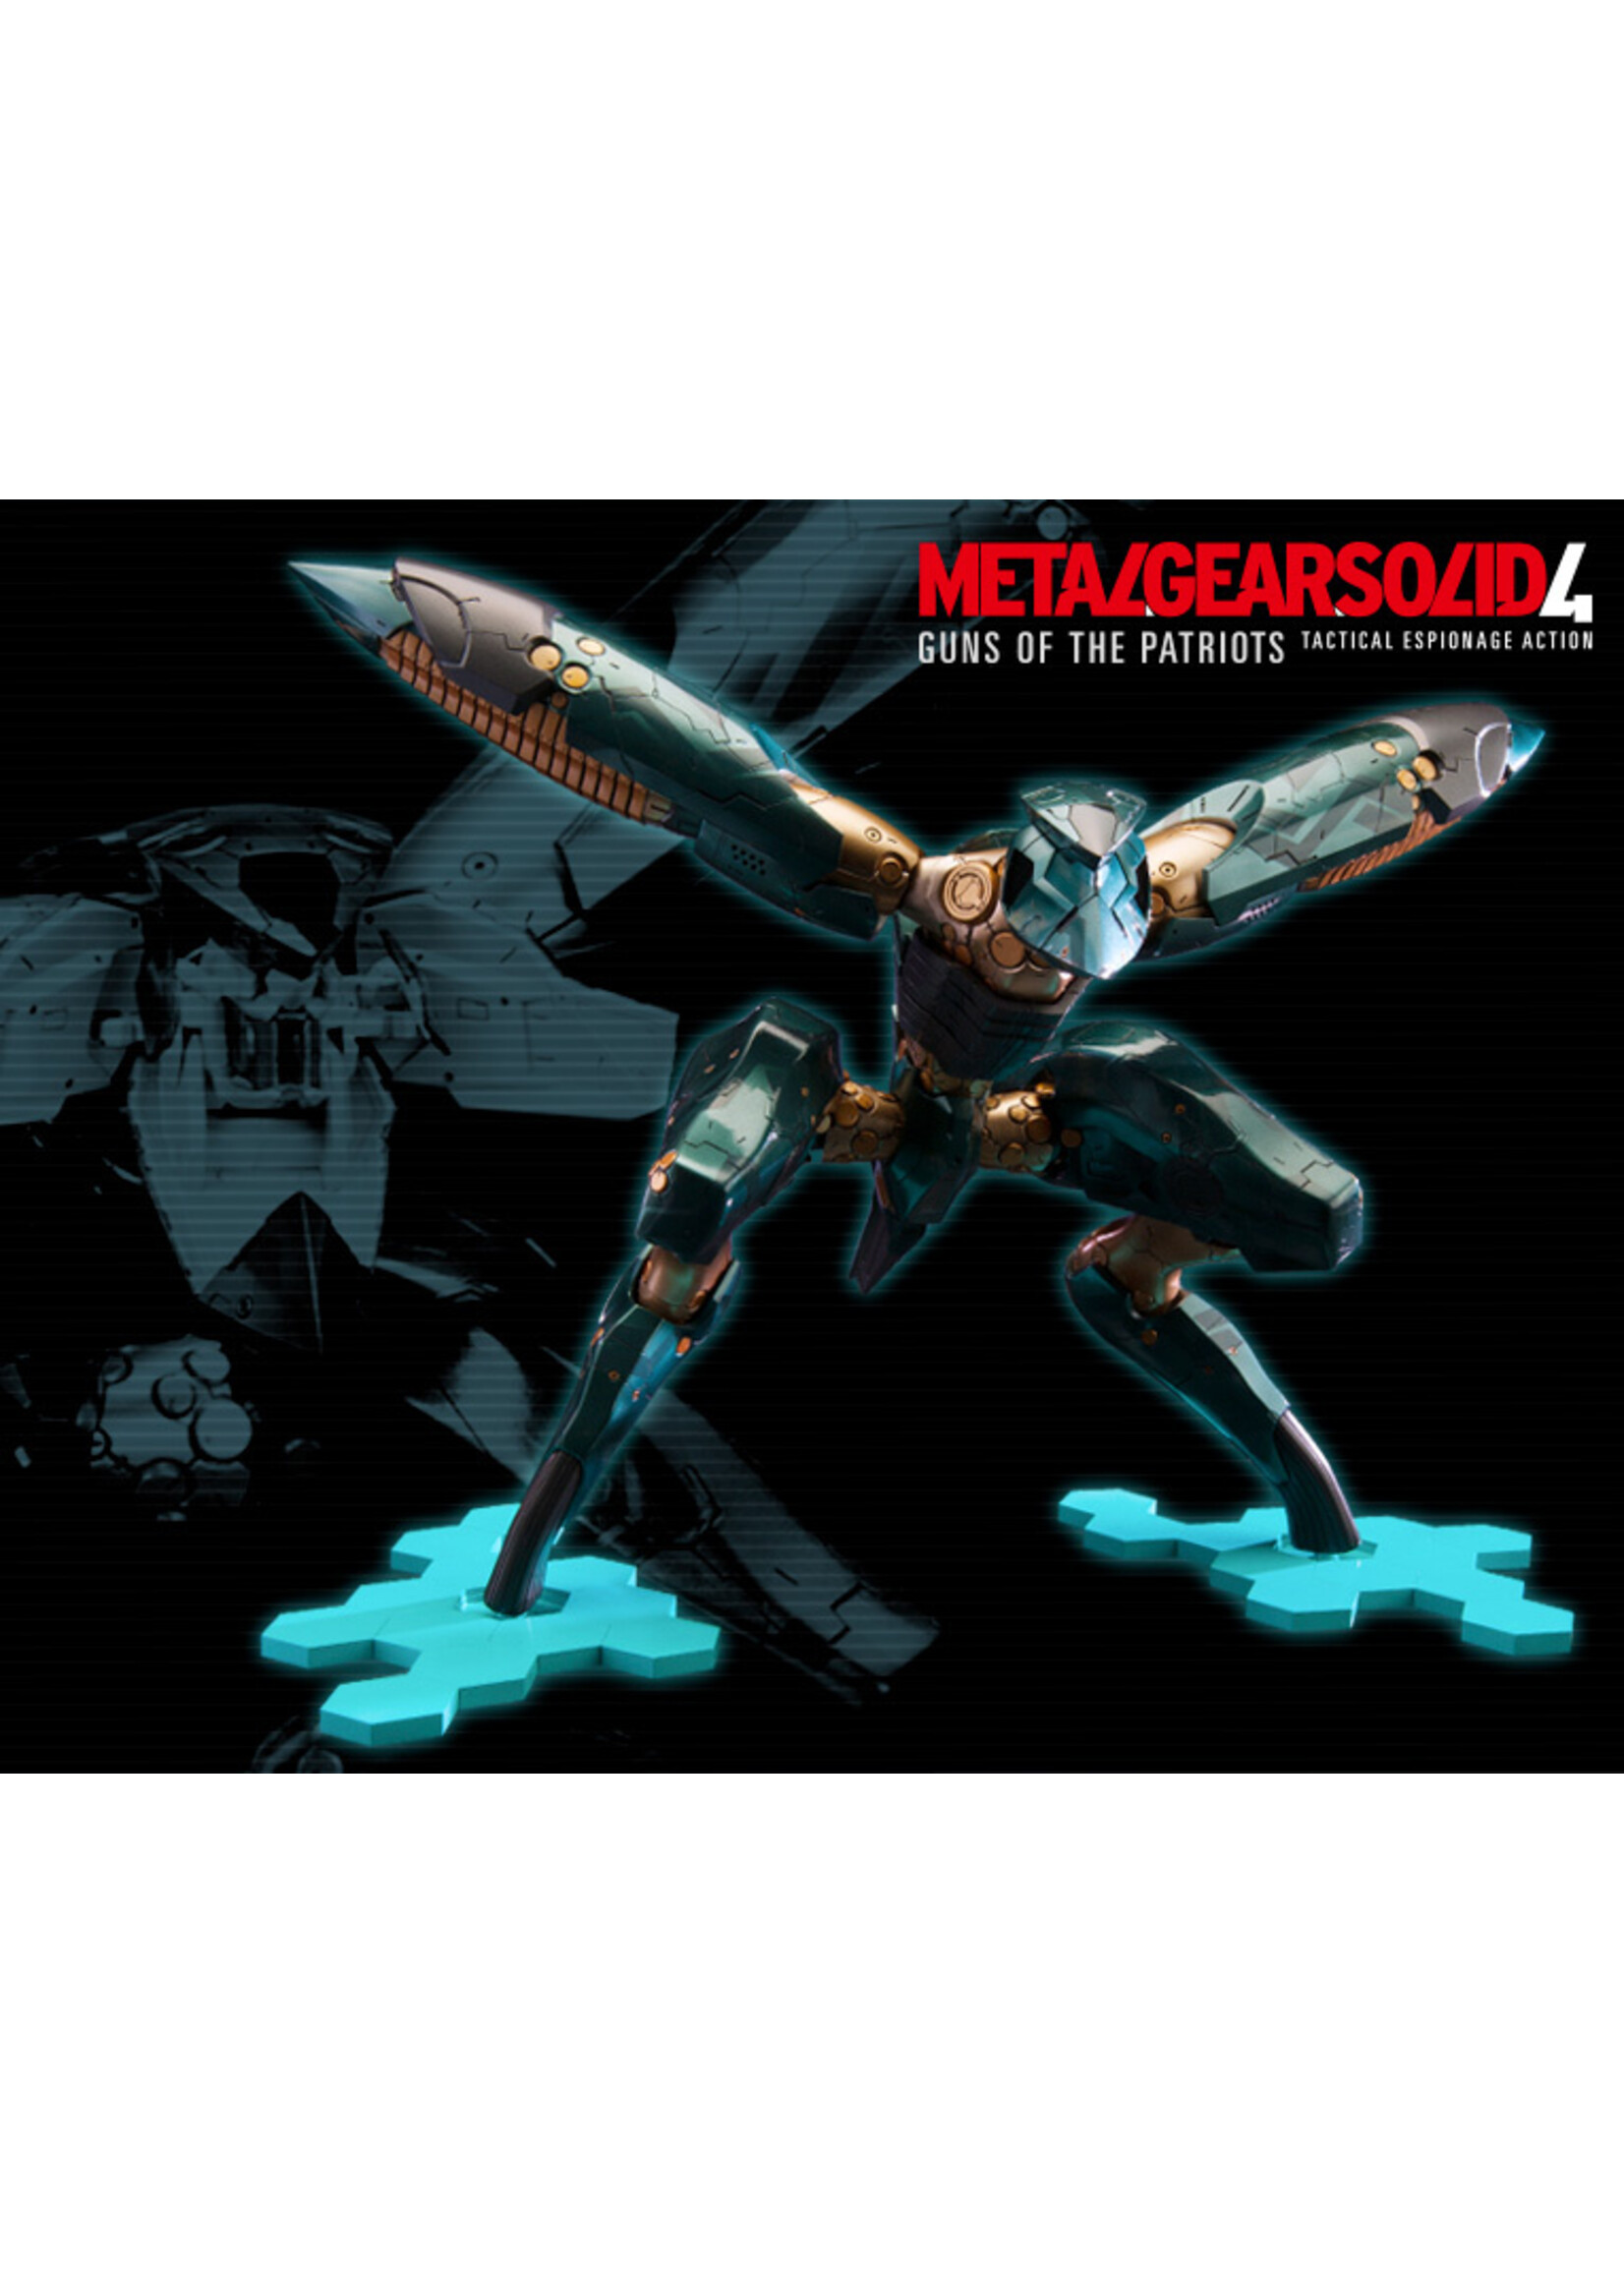 Kotobukiya KP266 - 1/100 Metal Gear Solid IV: Guns of The Patriots Ray